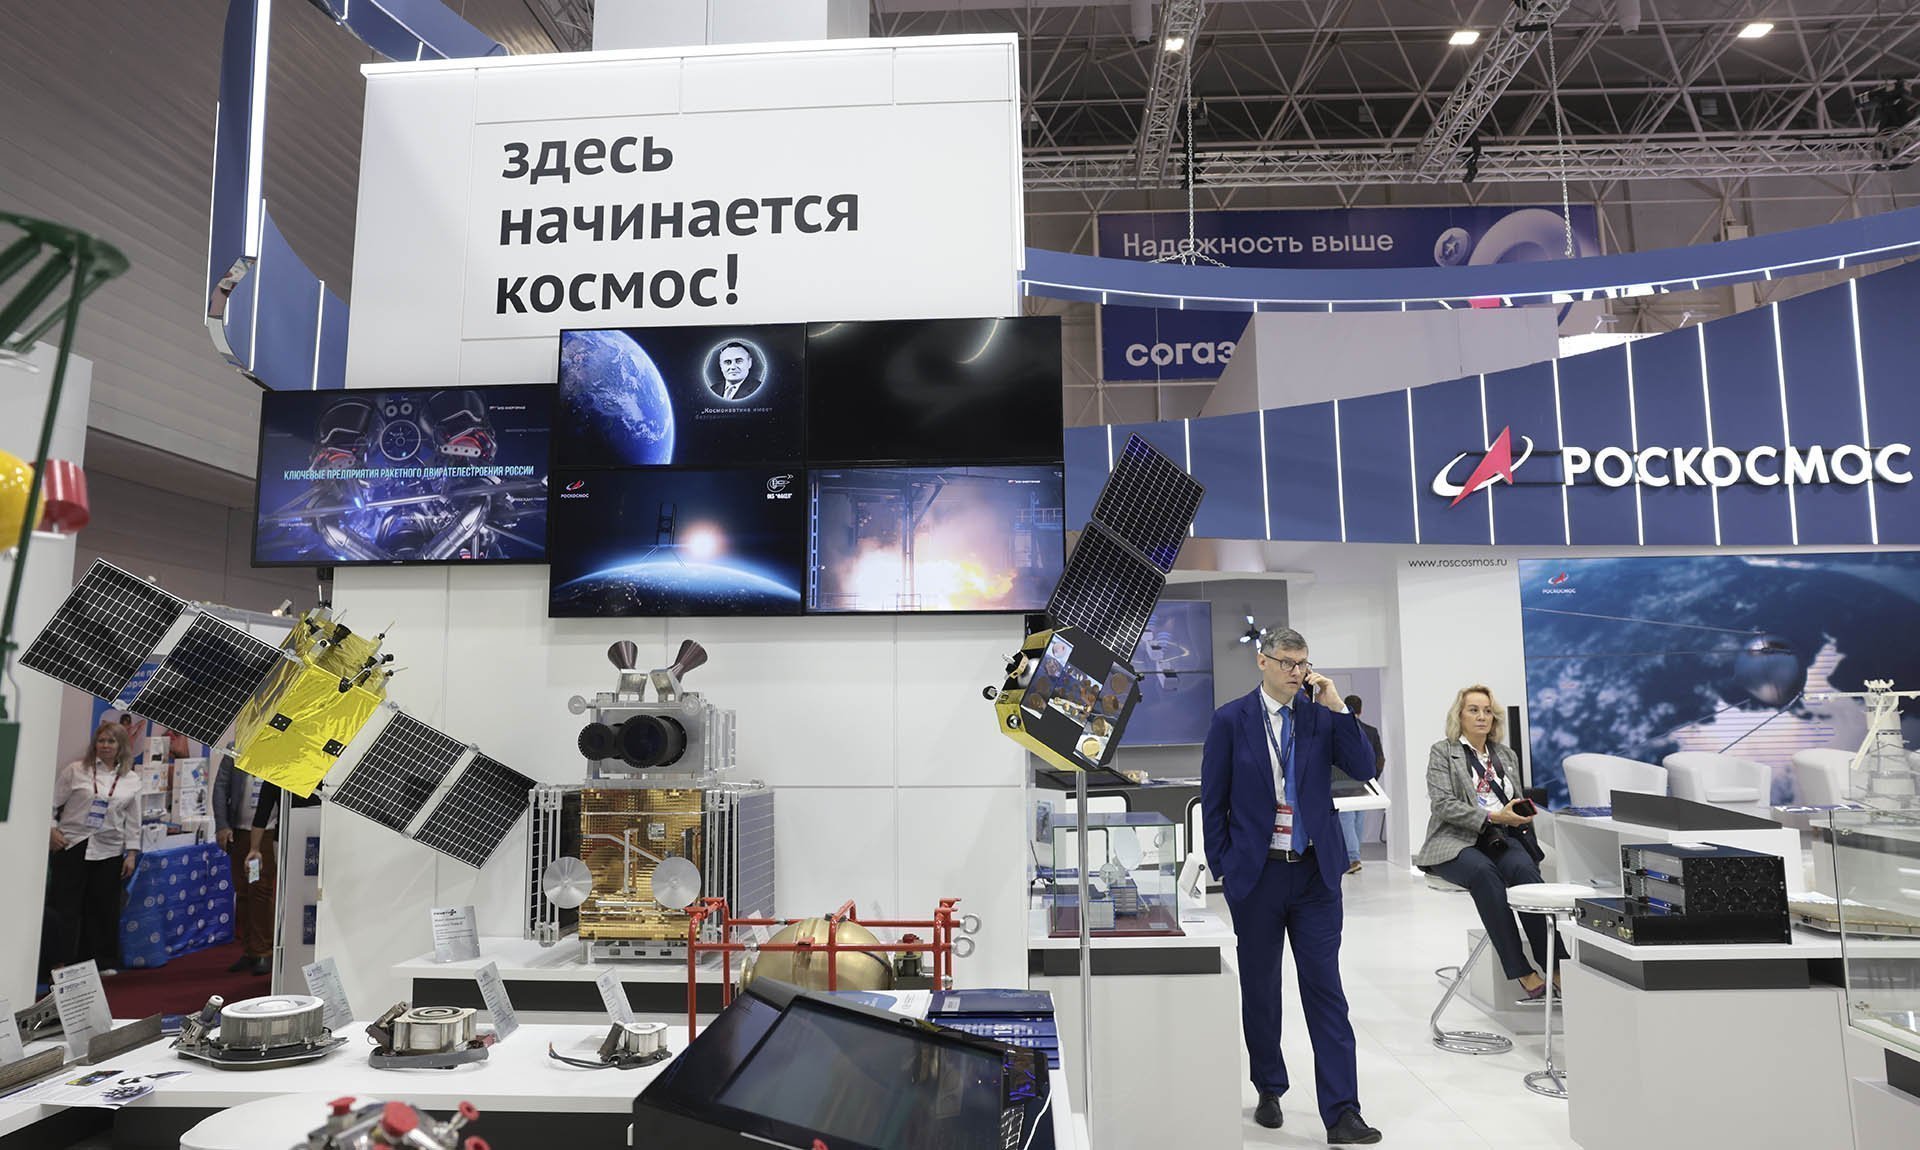 Экспозиция "Роскосмос" на выставке космических технологий 